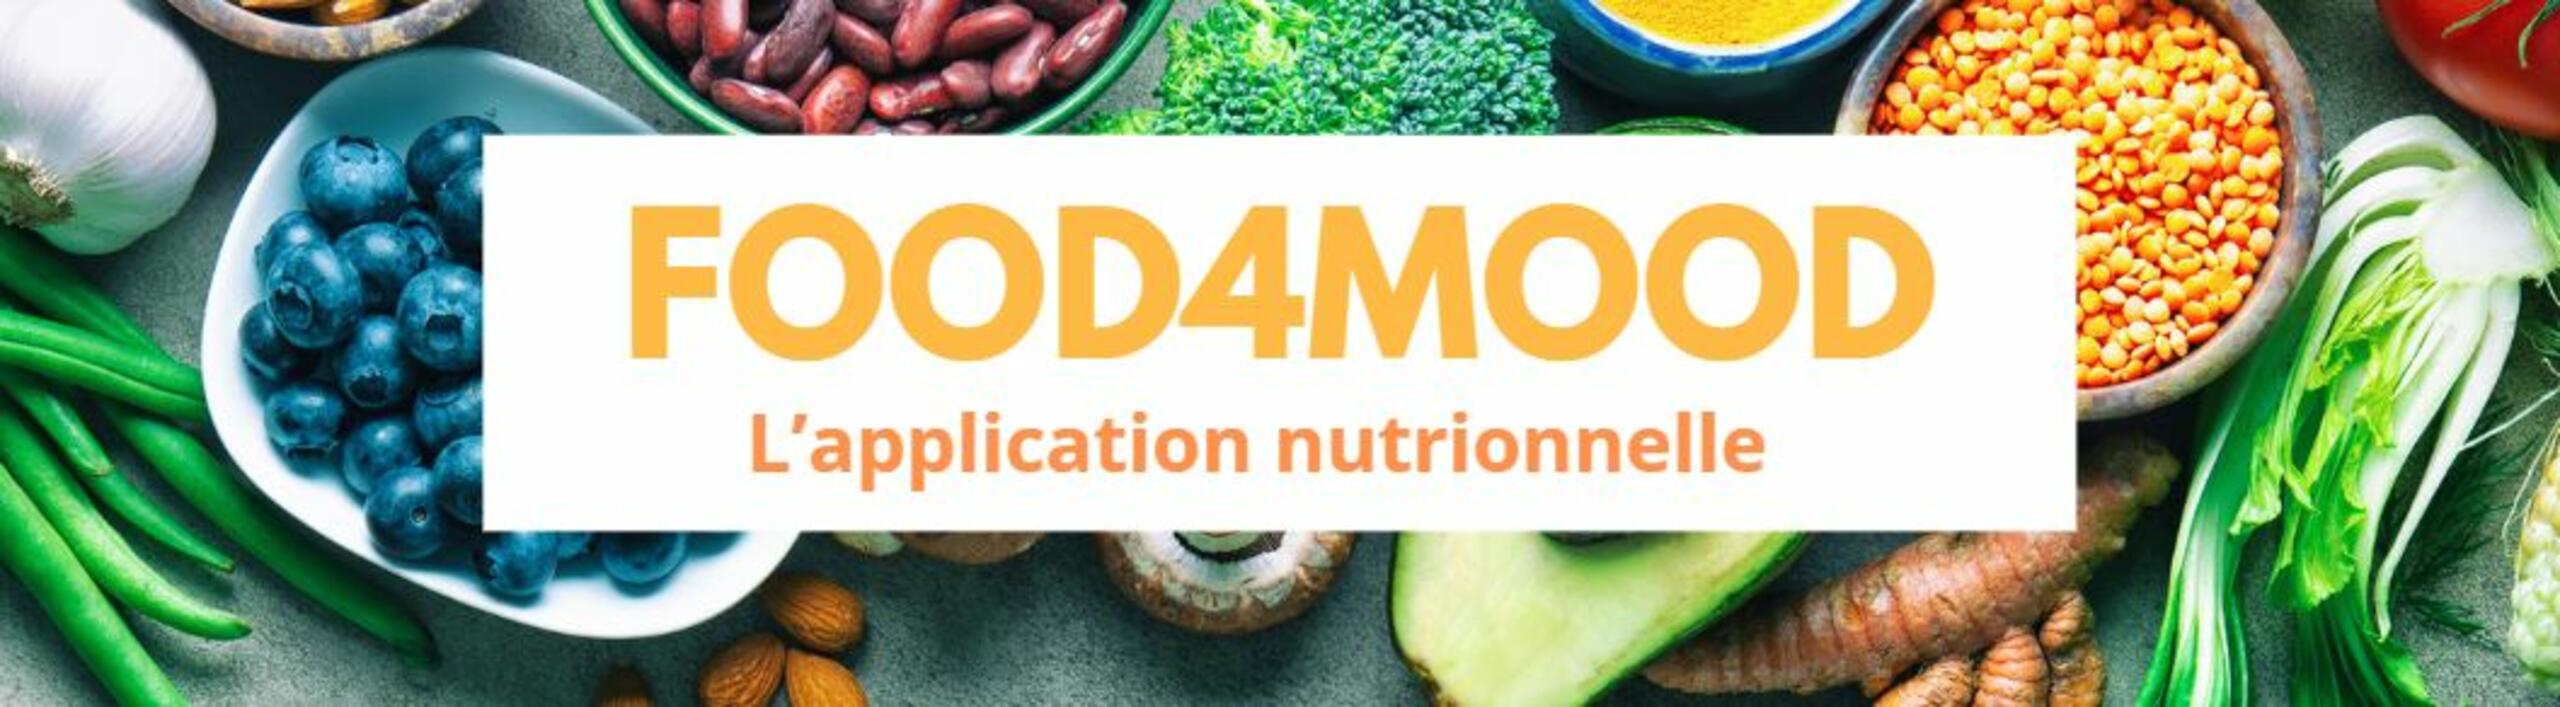 FOOD4MOOD : faites un don et soutenez l'application nutritionnelle